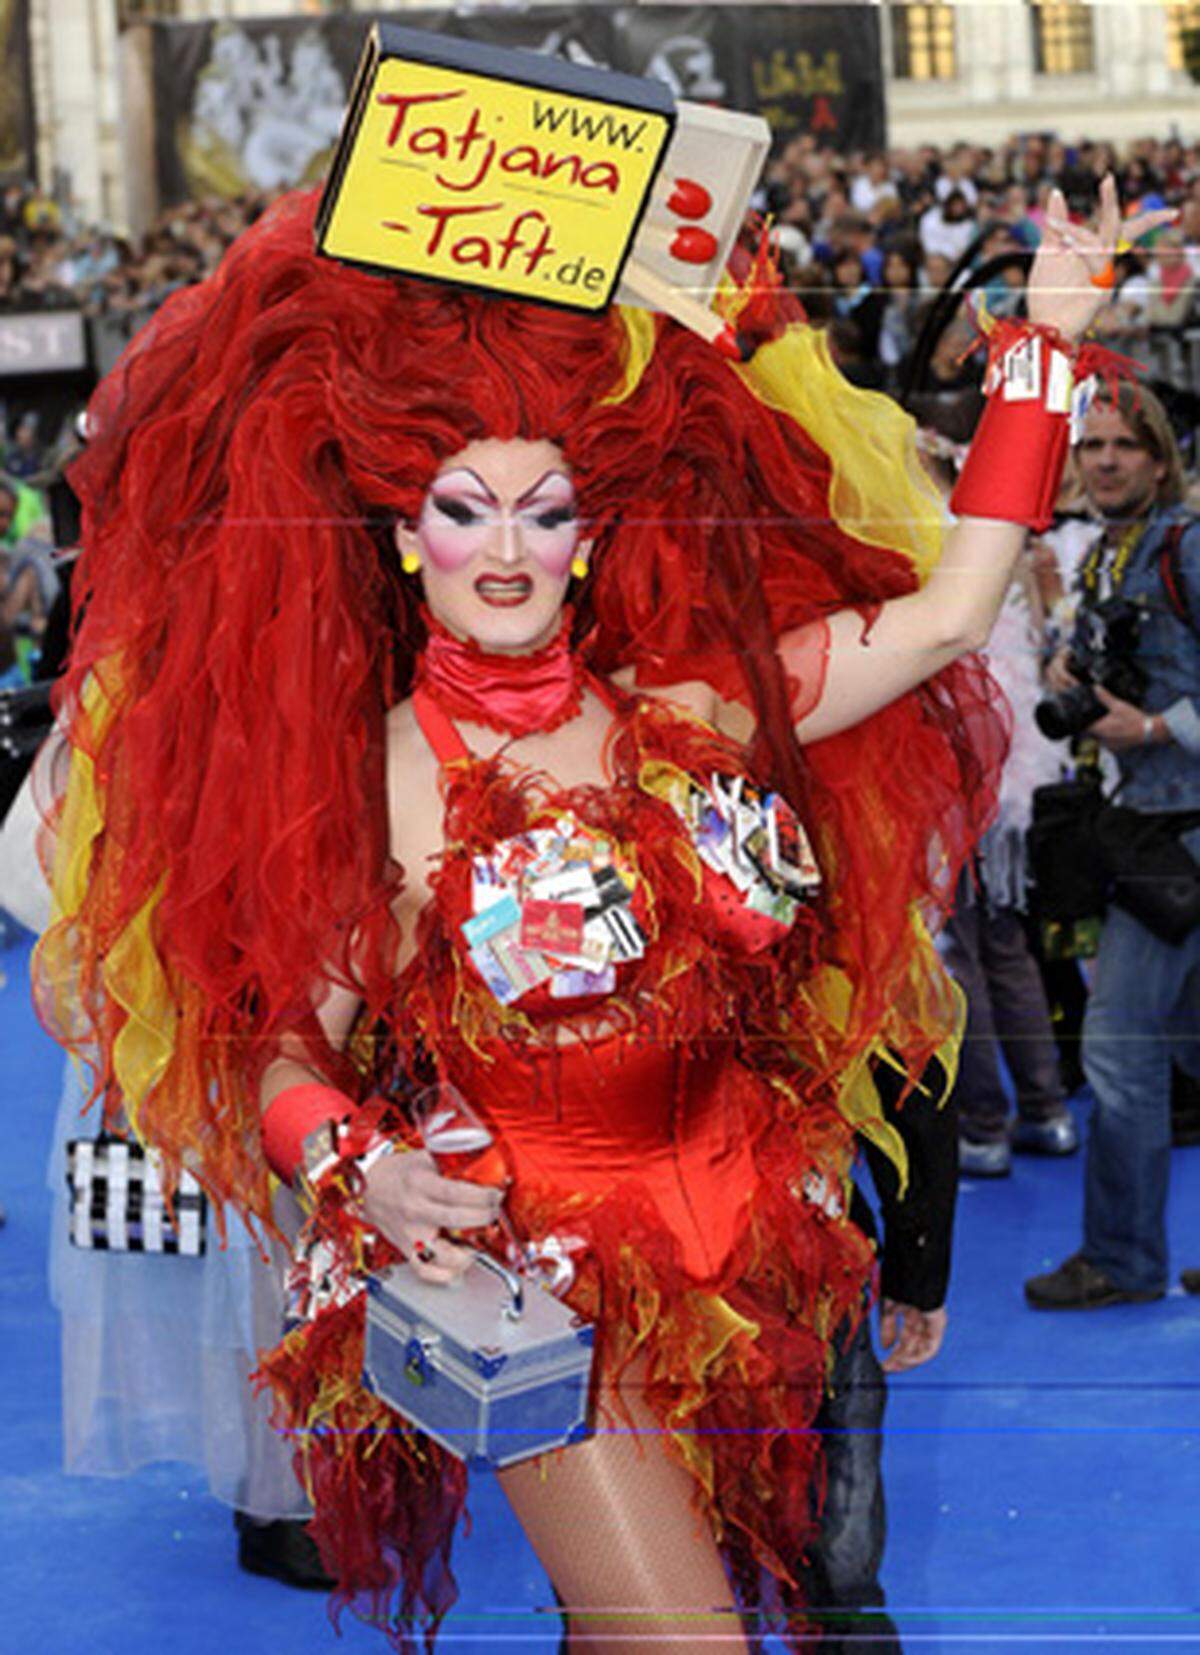 Die deutsche Drag-Queen Tatjana Taft reist Jahr für Jahr in die Donaumetropole. 2008 wurde sie zur Life Ball Queen gekürt.